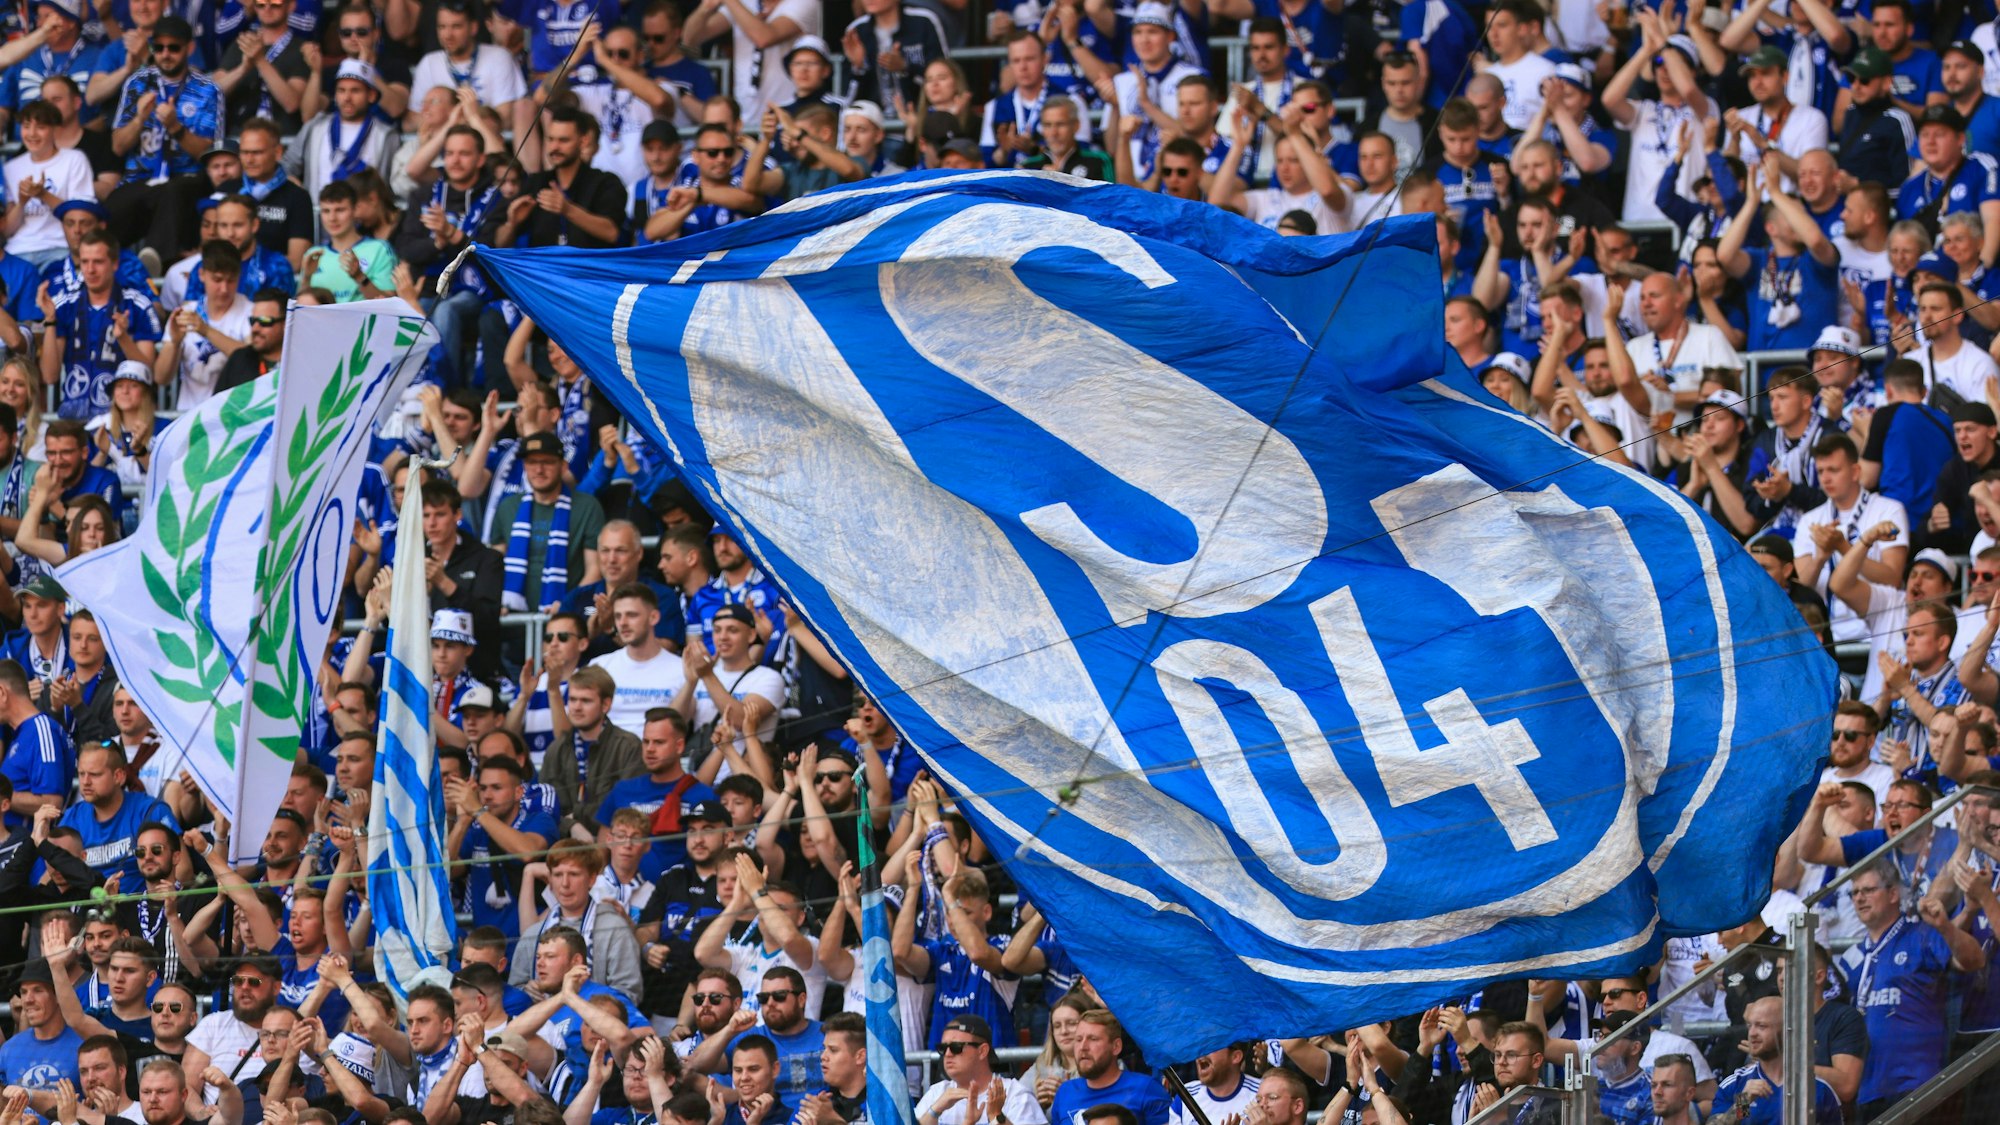 Eine große Schalke-Fahne weht im Fanblock.